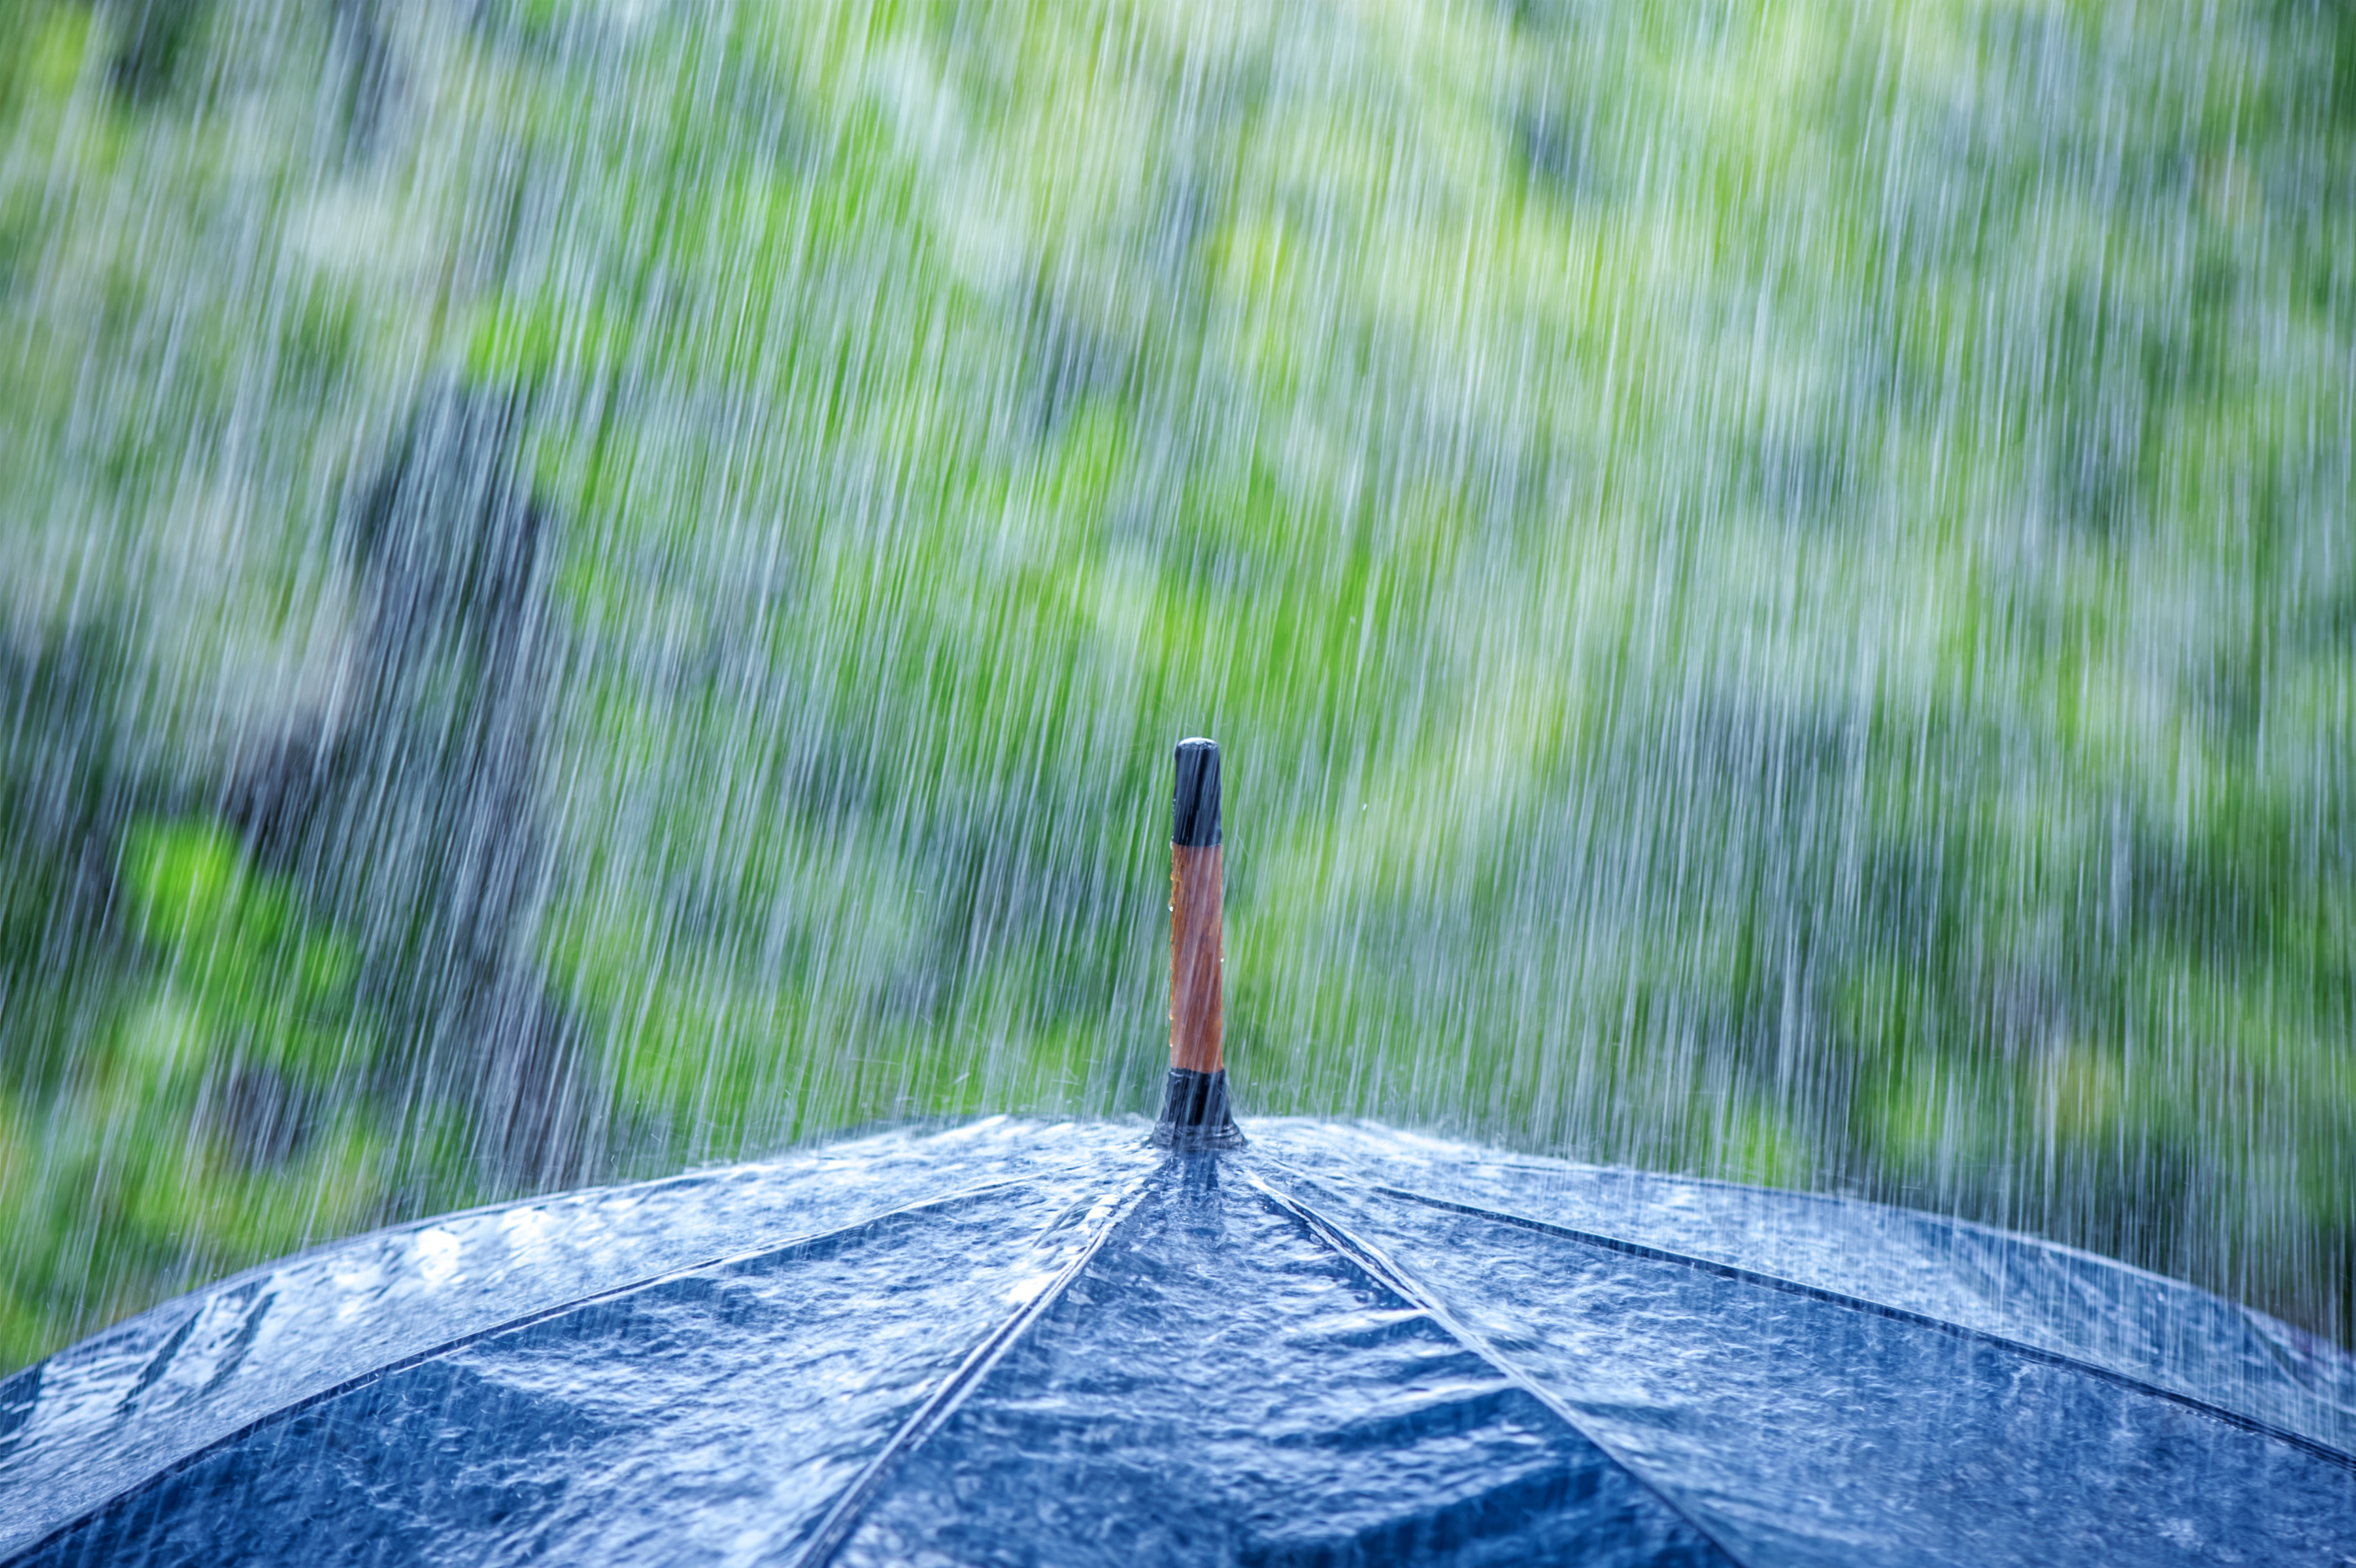 La météorologie permet de prévoir les fortes pluies comme celle-ci. © ivan kmit, Adobe Stock.